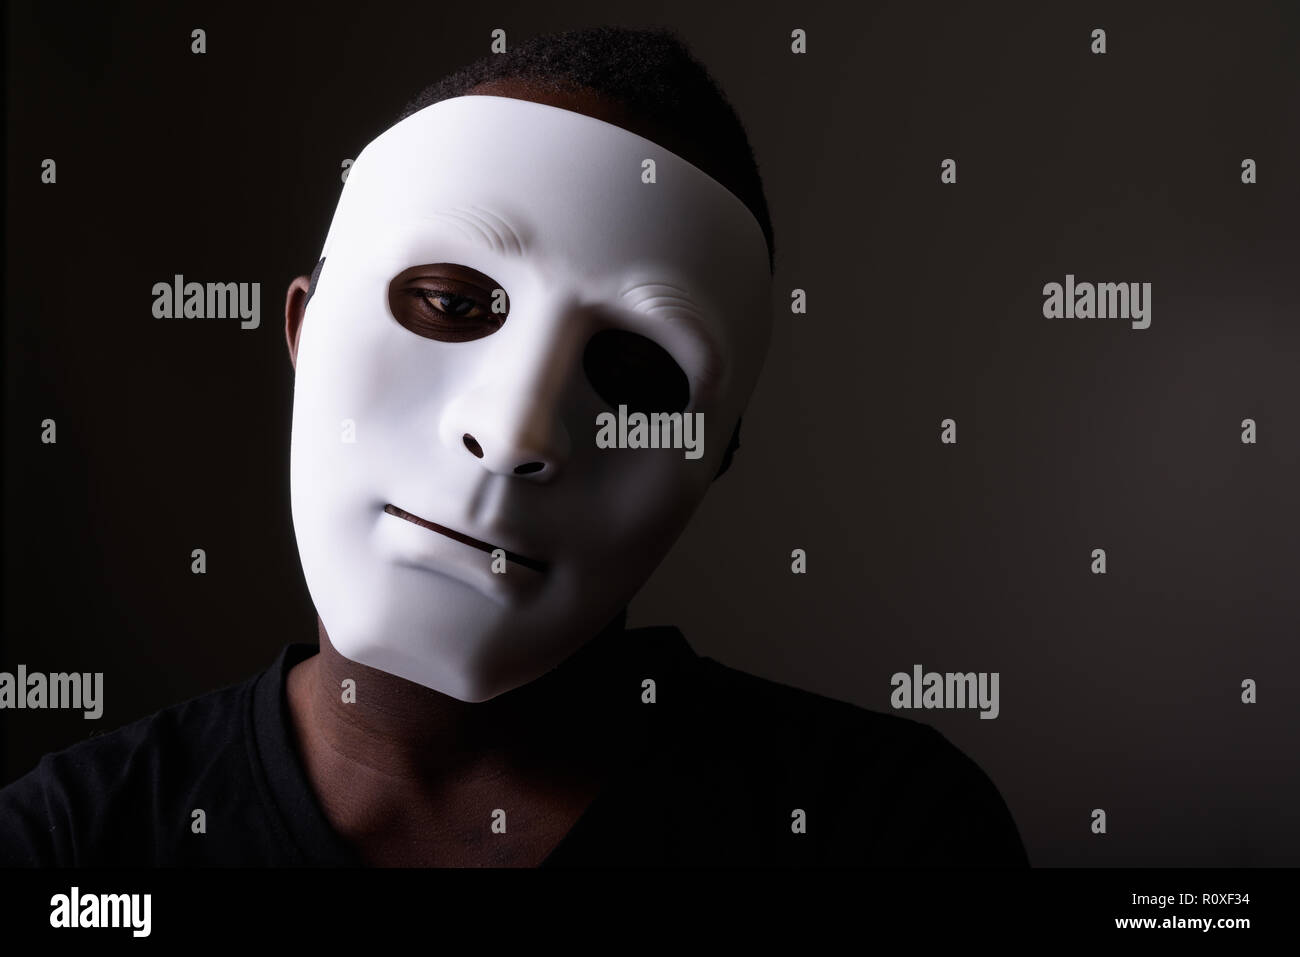 Portrait de jeune homme africain noir dans une pièce sombre wearing mask Banque D'Images